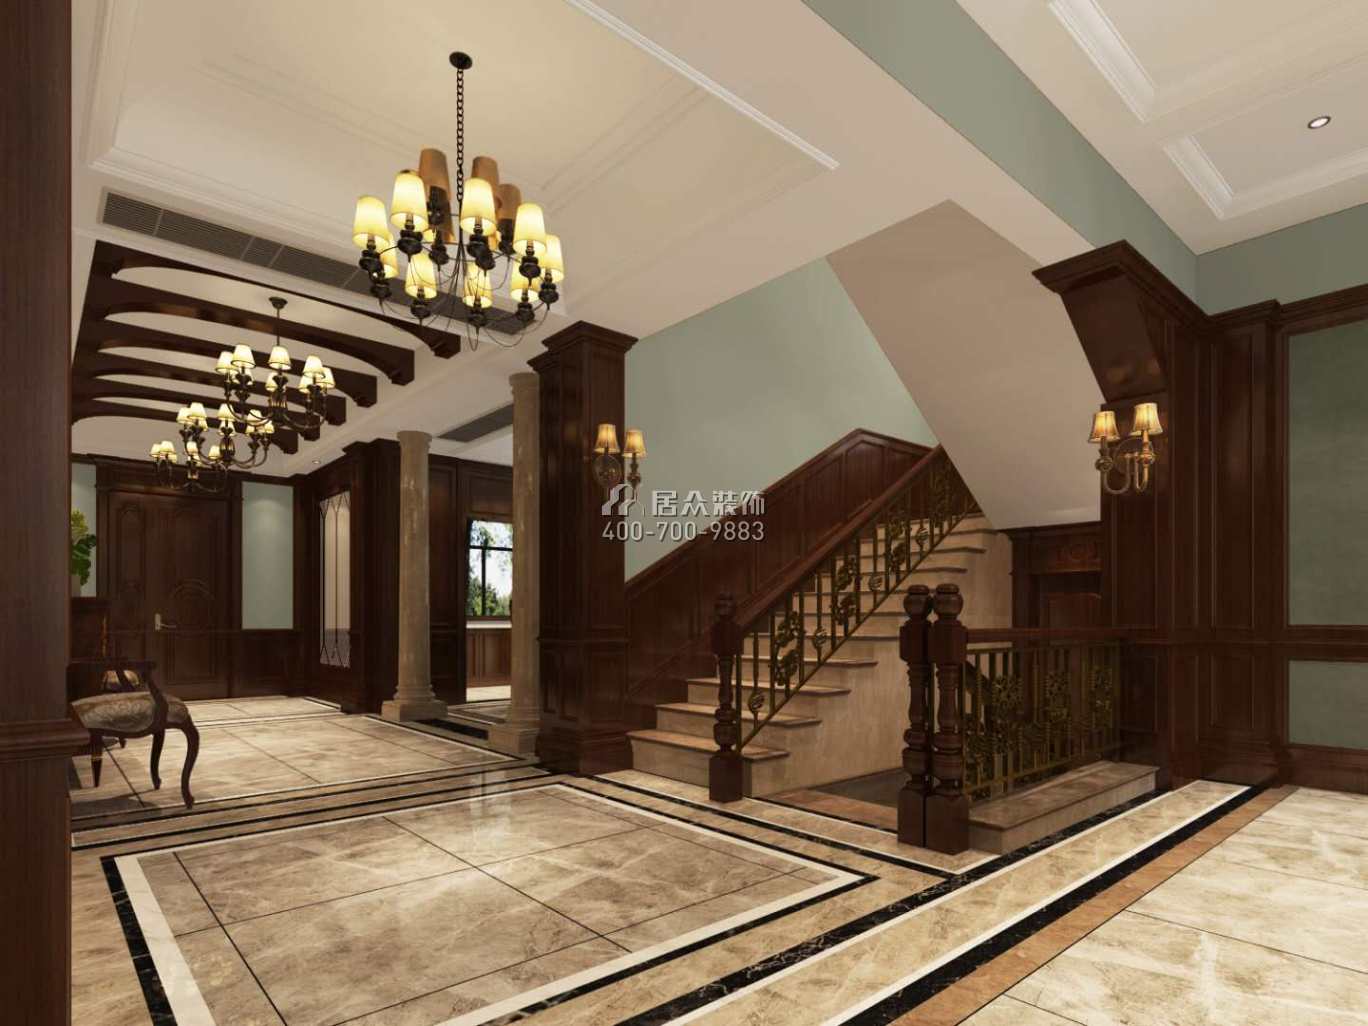 運達城350平方米新古典風格別墅戶型樓梯裝修效果圖